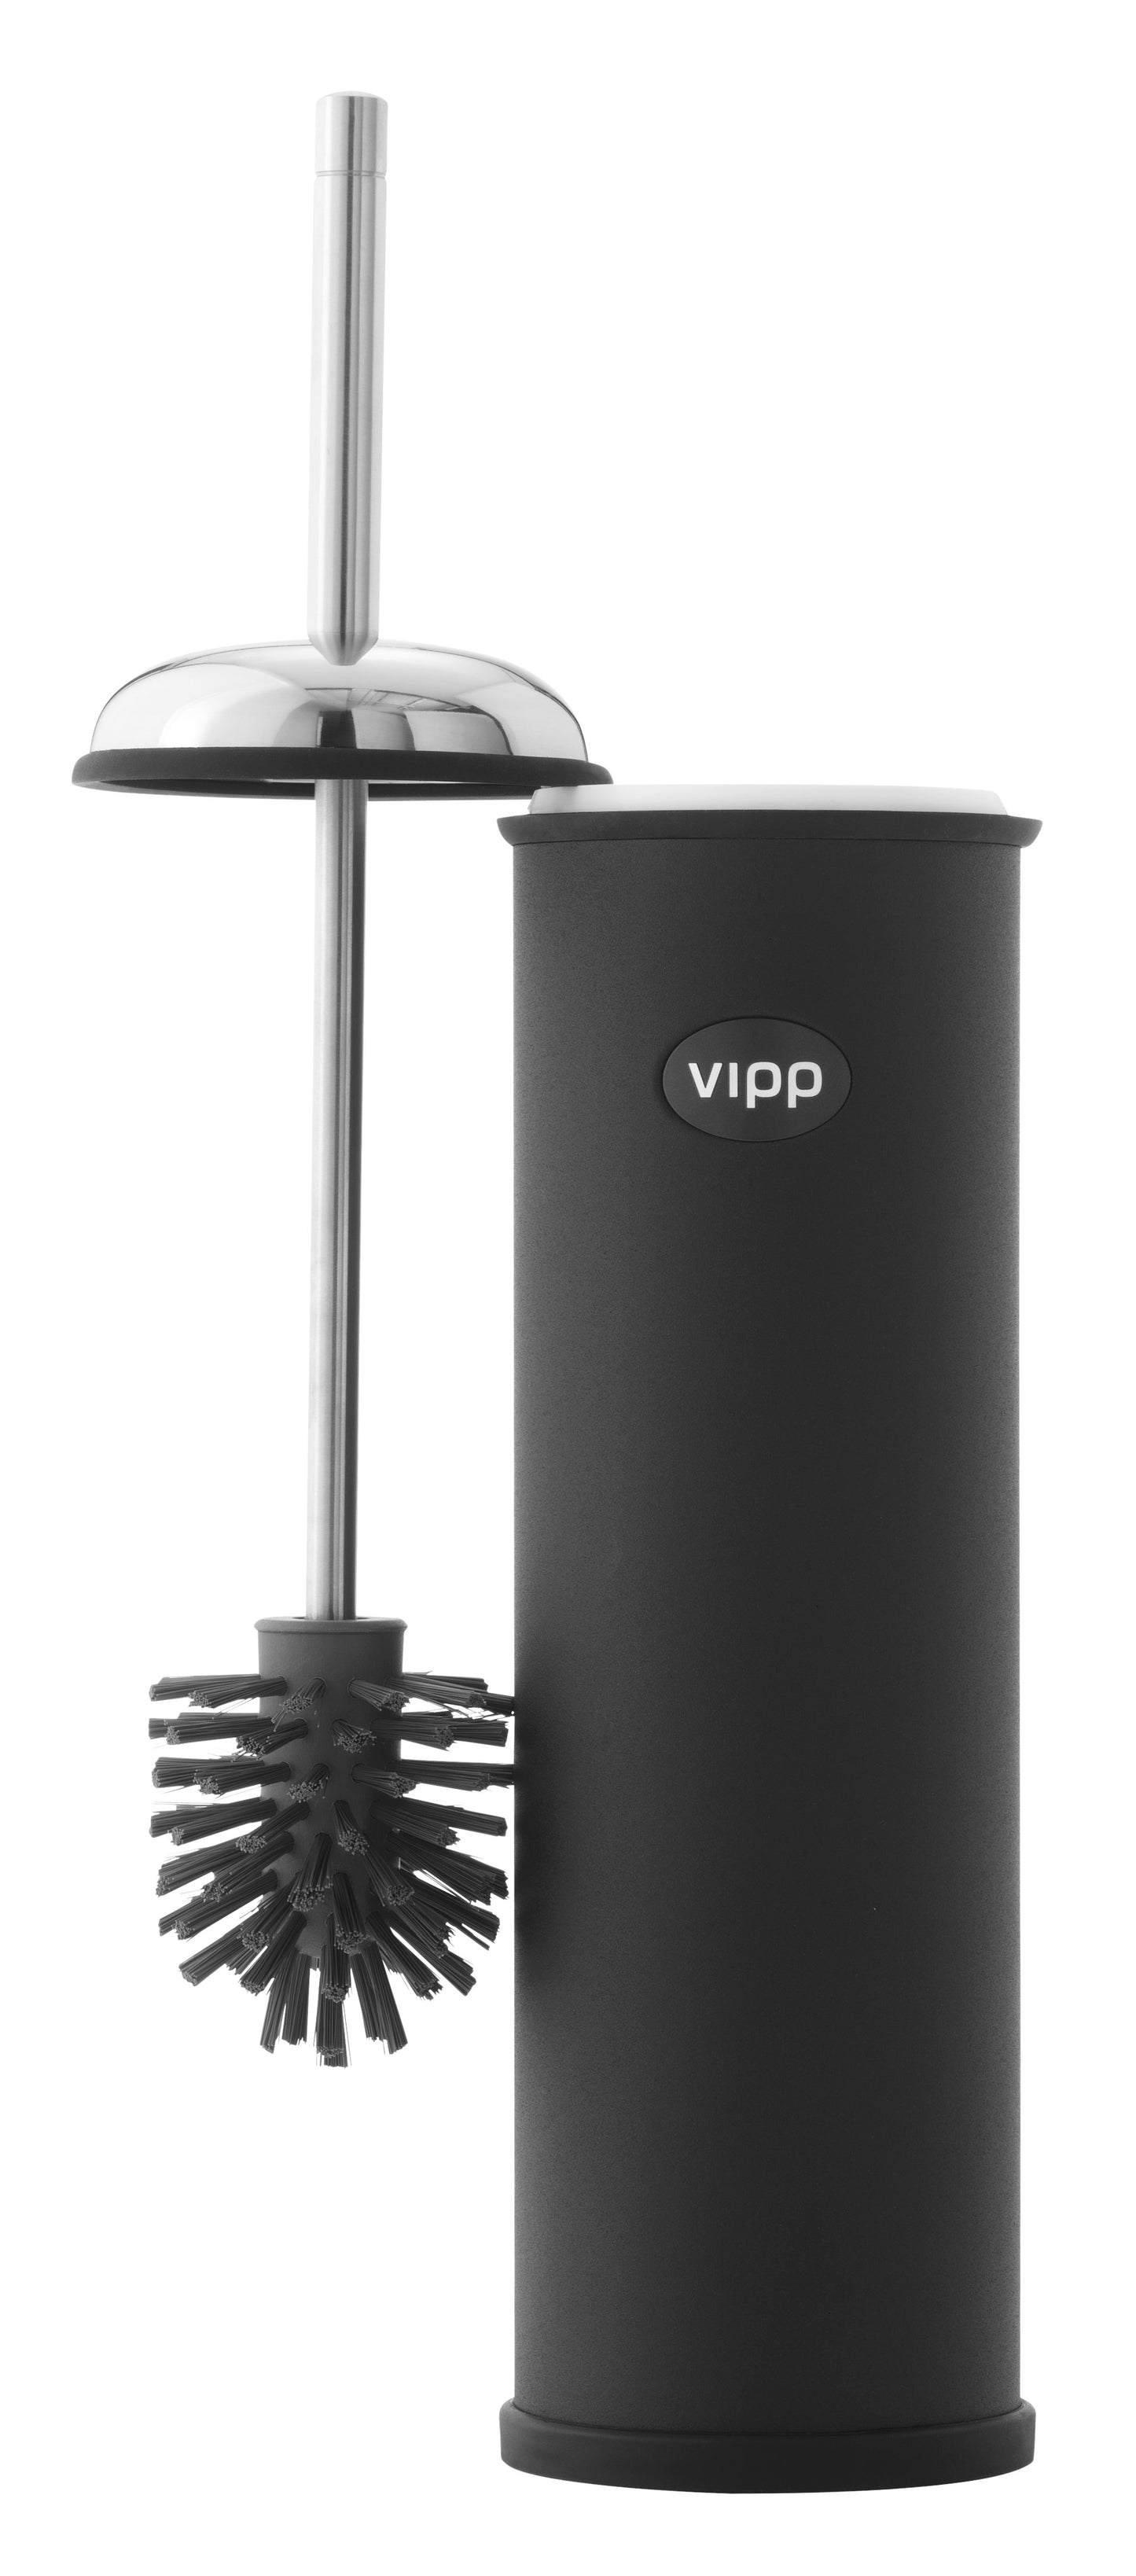 Vipp WC-Bürste für Wandbefestigung, schwarz